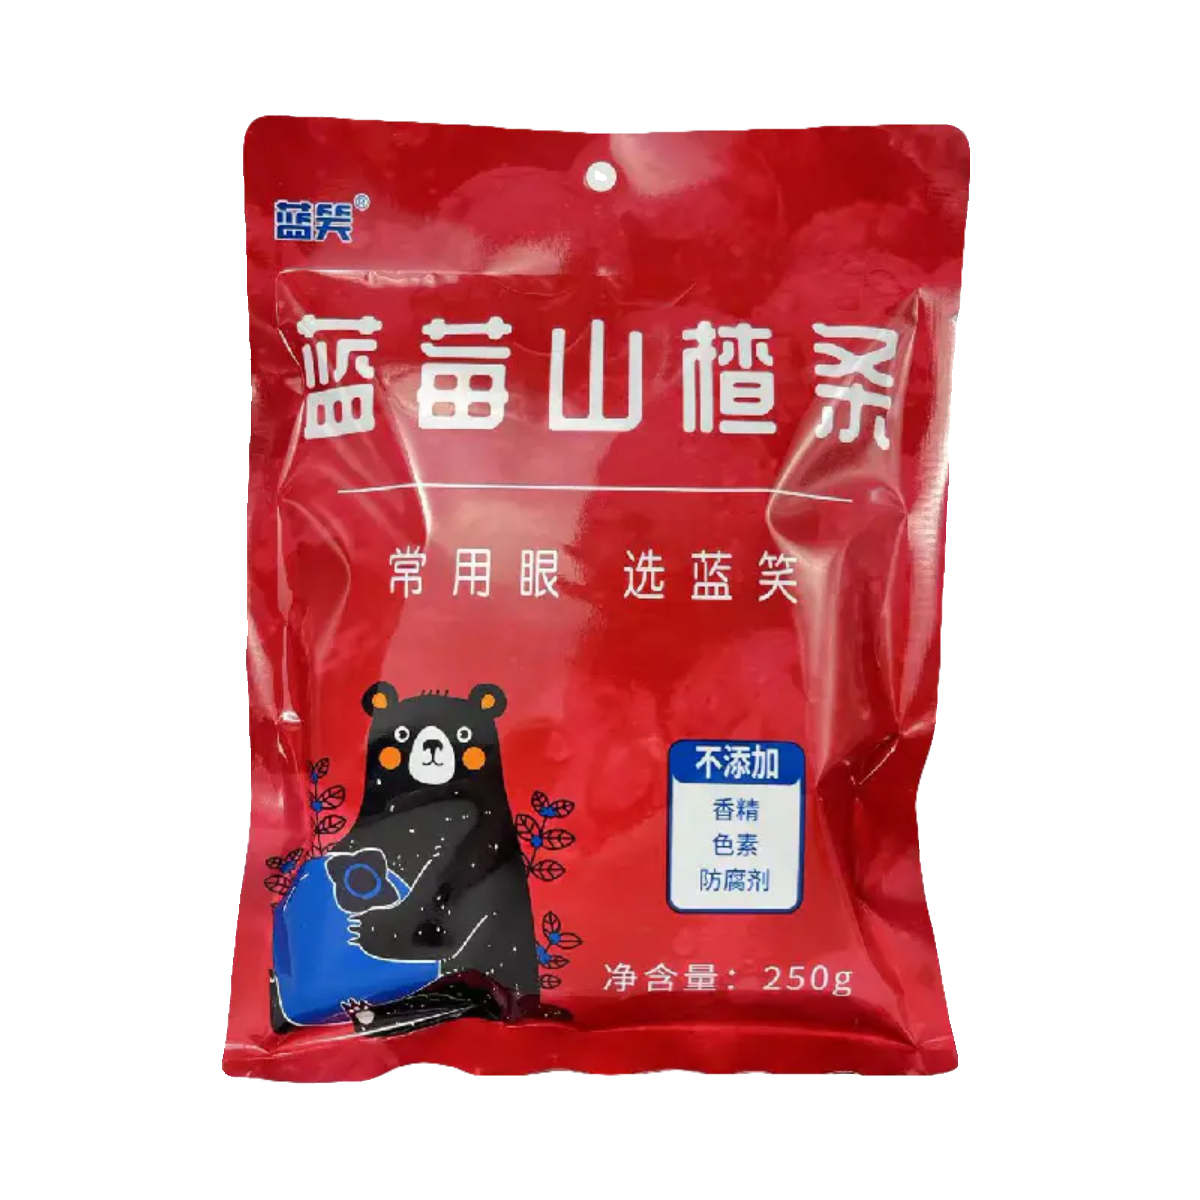 贵州特产蓝笑蓝莓山楂条500g无添加开胃小吃儿童孕妇休闲零食品